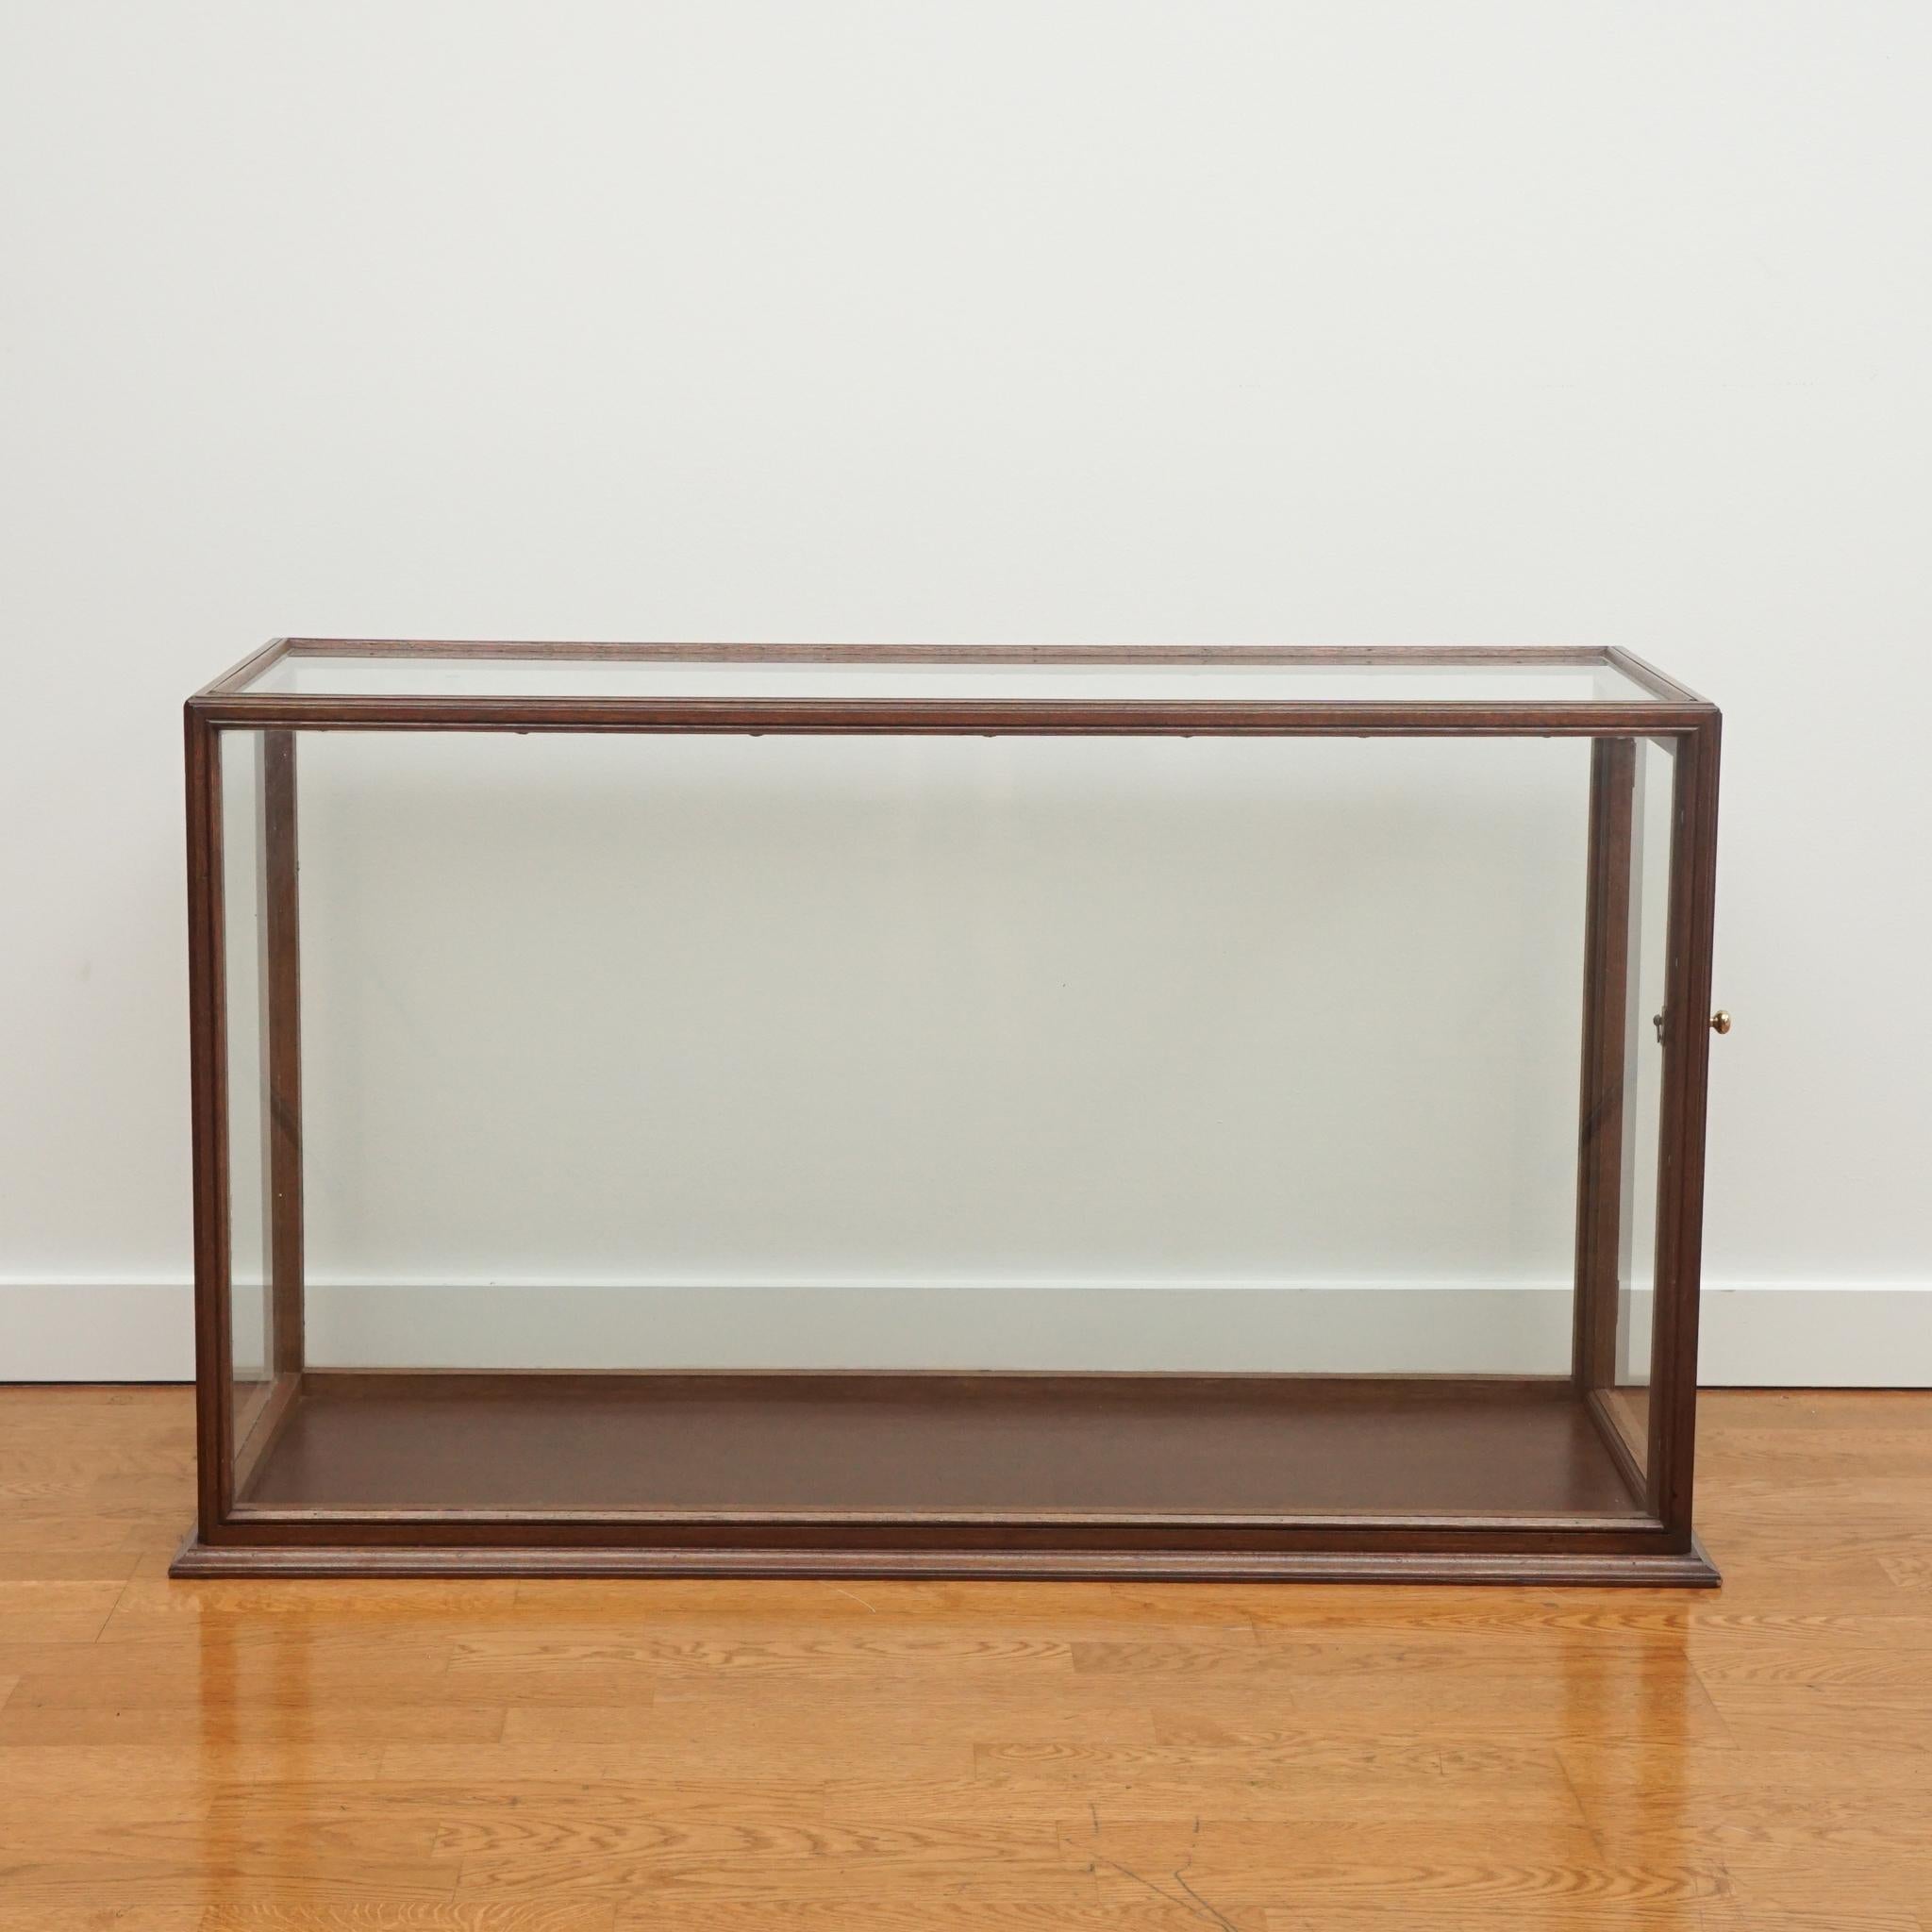 glass case frame